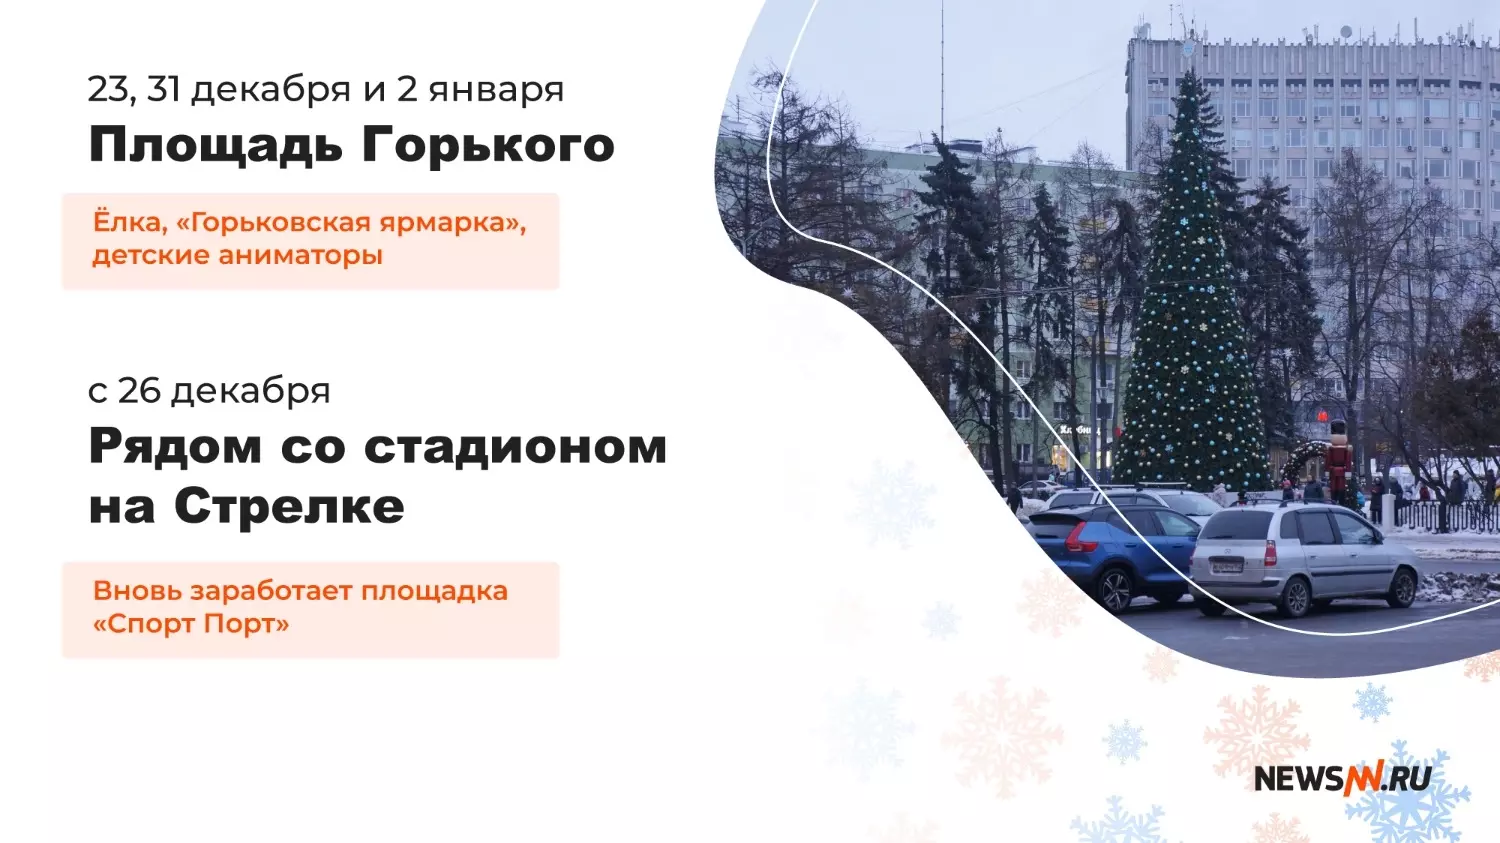 Куда сходить в новогодние праздники в Нижнем Новгороде